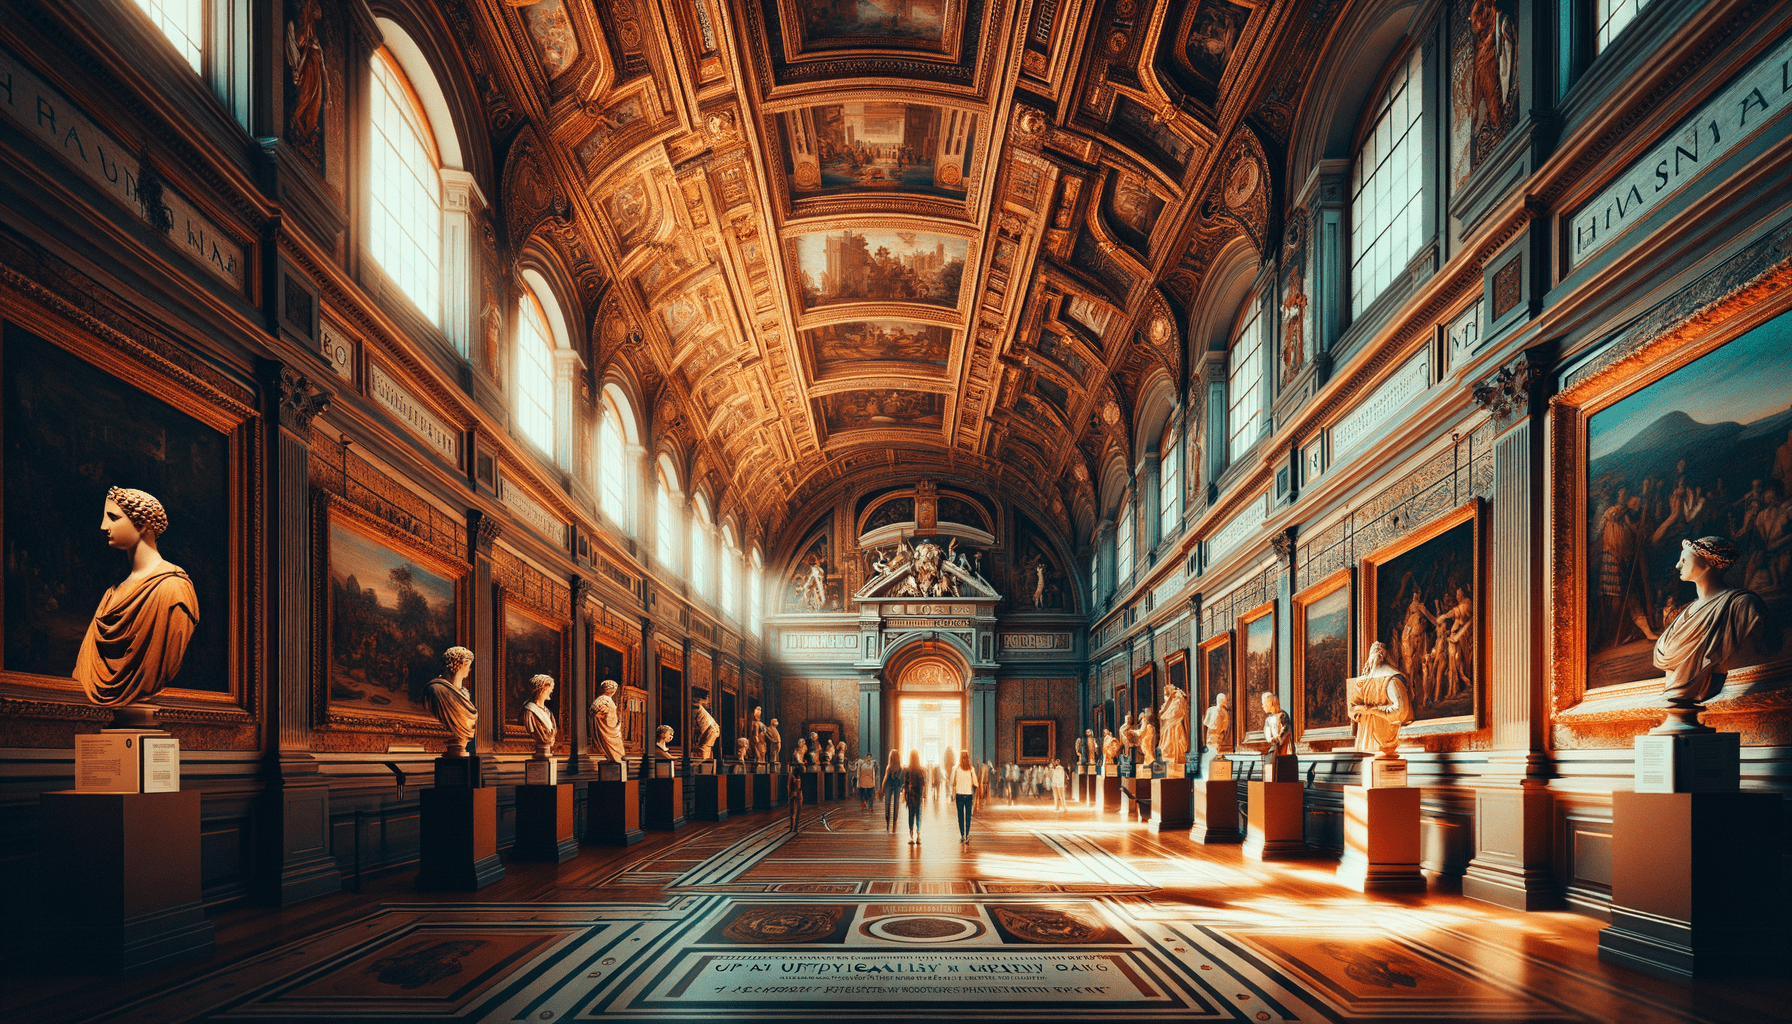 Scopri tutto sulle Galleria degli Uffizi a Firenze: Storia, Opere, Biglietti, indirizzo e orari